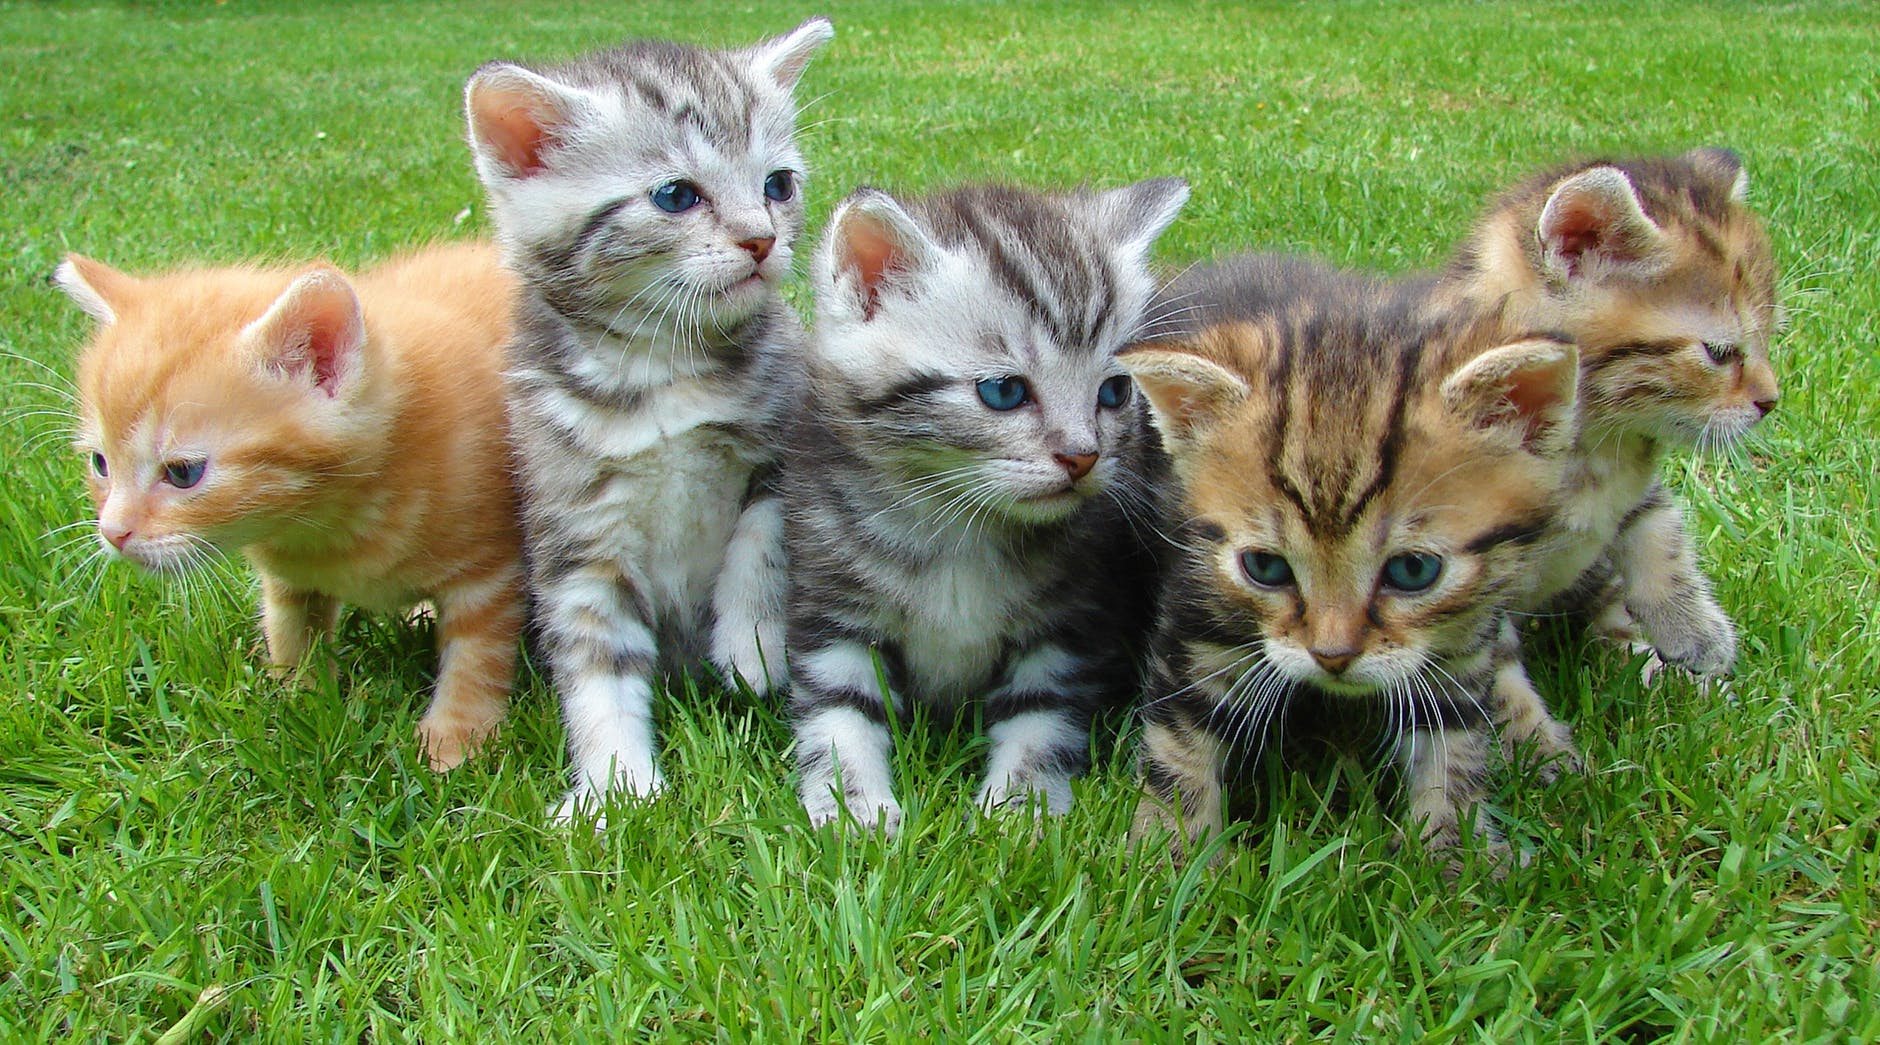 إرنست شاكلتون واعد التوتر  انواع القطط - موقع محتويات